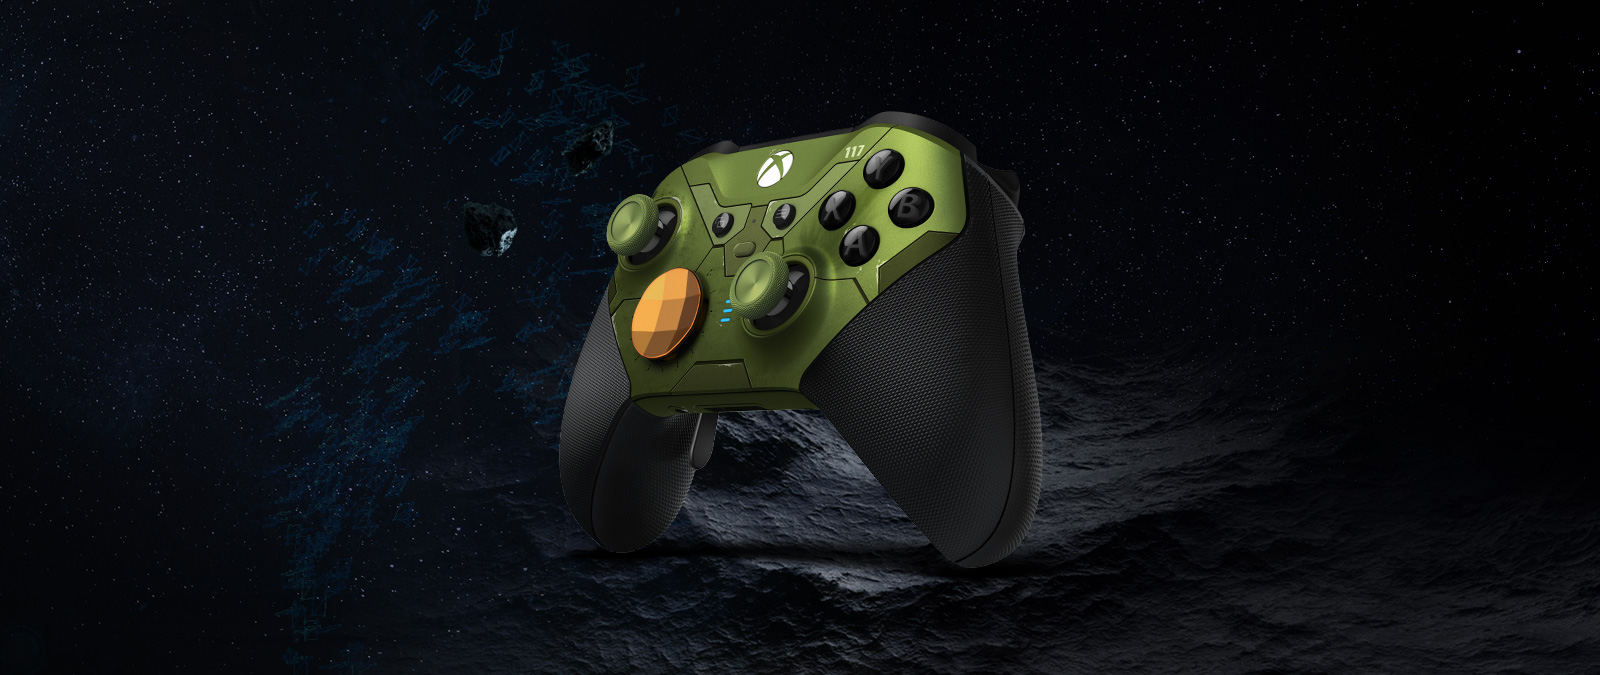 Az Elite vezeték nélküli Xbox-kontroller, Series 2 – Halo Infinite Limited Edition kontroller jobb oldali dönttt képe, amint az űrben lebeg